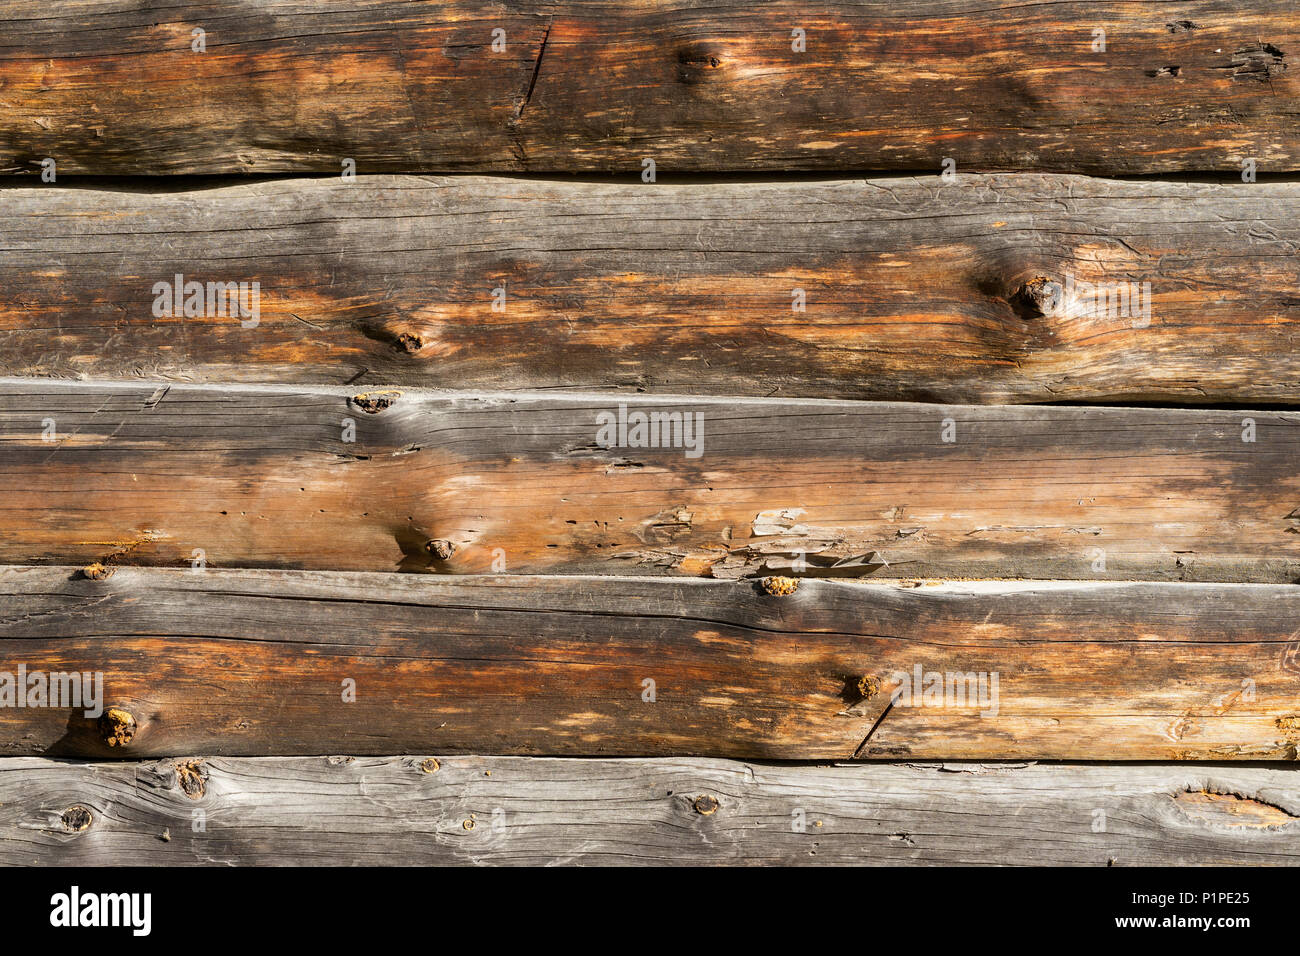 Superficie de madera natural, de textura. Vintage tablones horizontales de madera con grietas, arañazos de moderno diseño grunge, patrones de fondo, espacio de copia Foto de stock